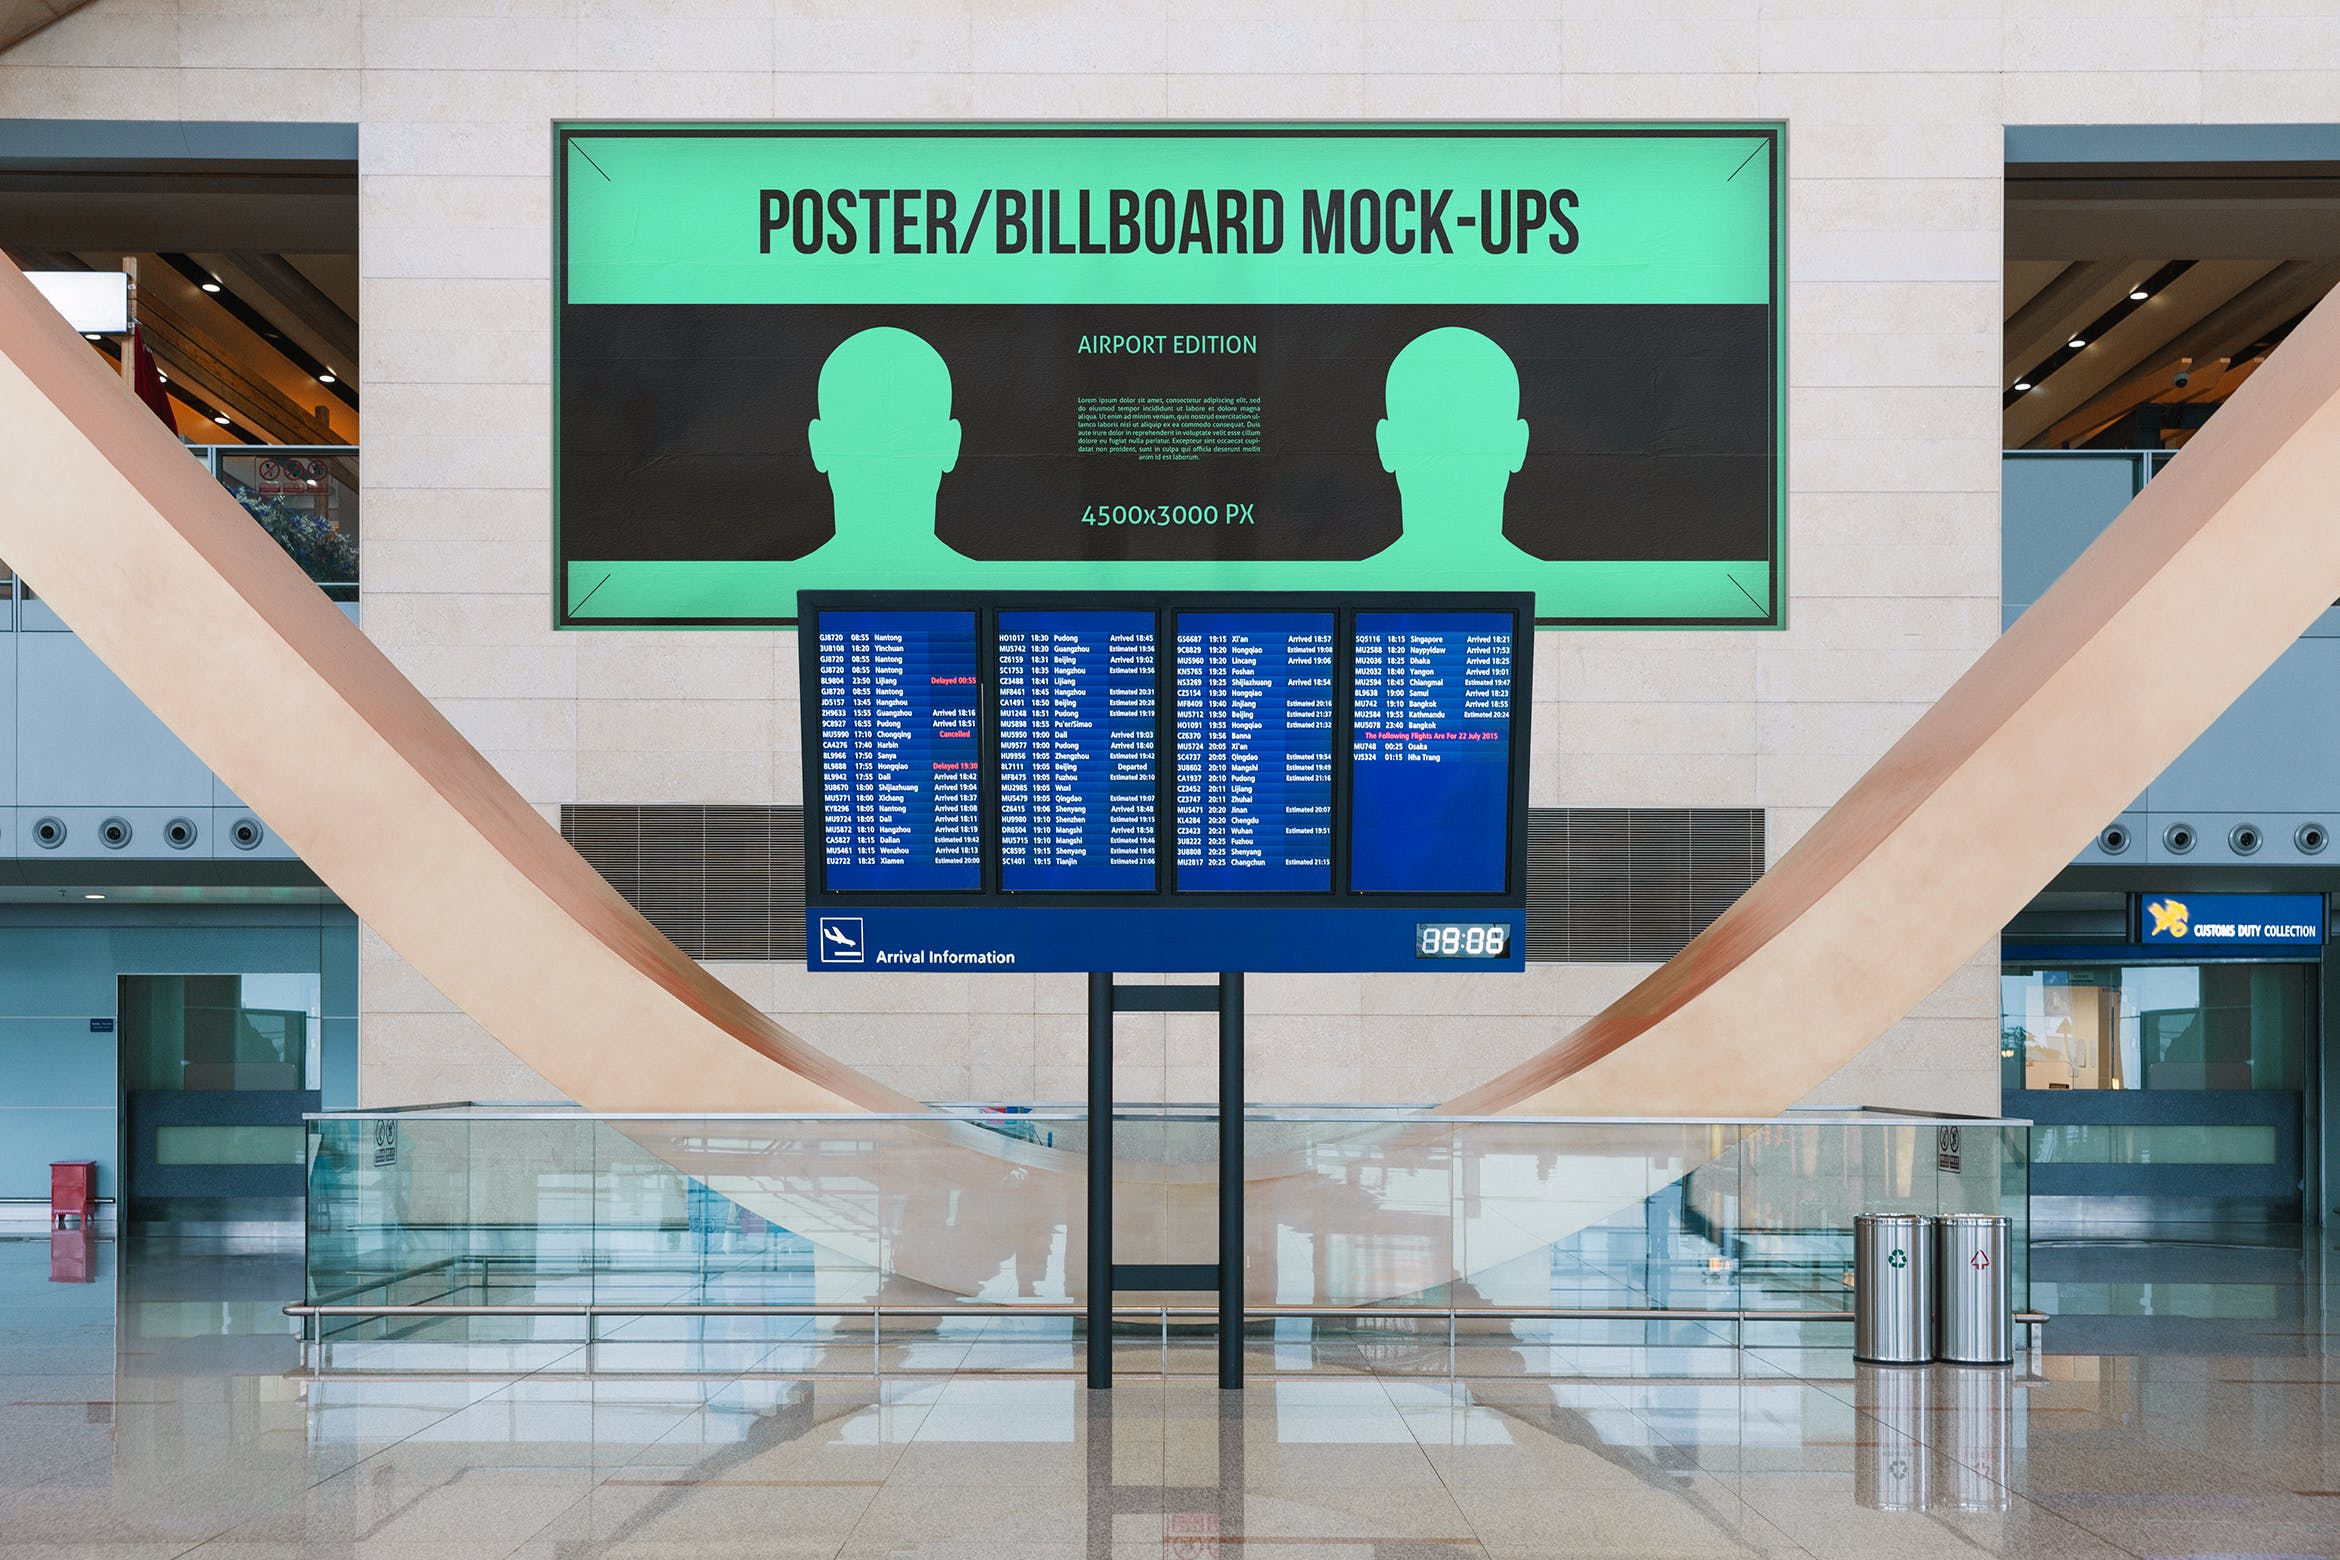 机场航班信息屏幕海报/广告牌样机素材中国精选模板#7 Poster / Billboard Mock-ups – Airport Edition #7插图